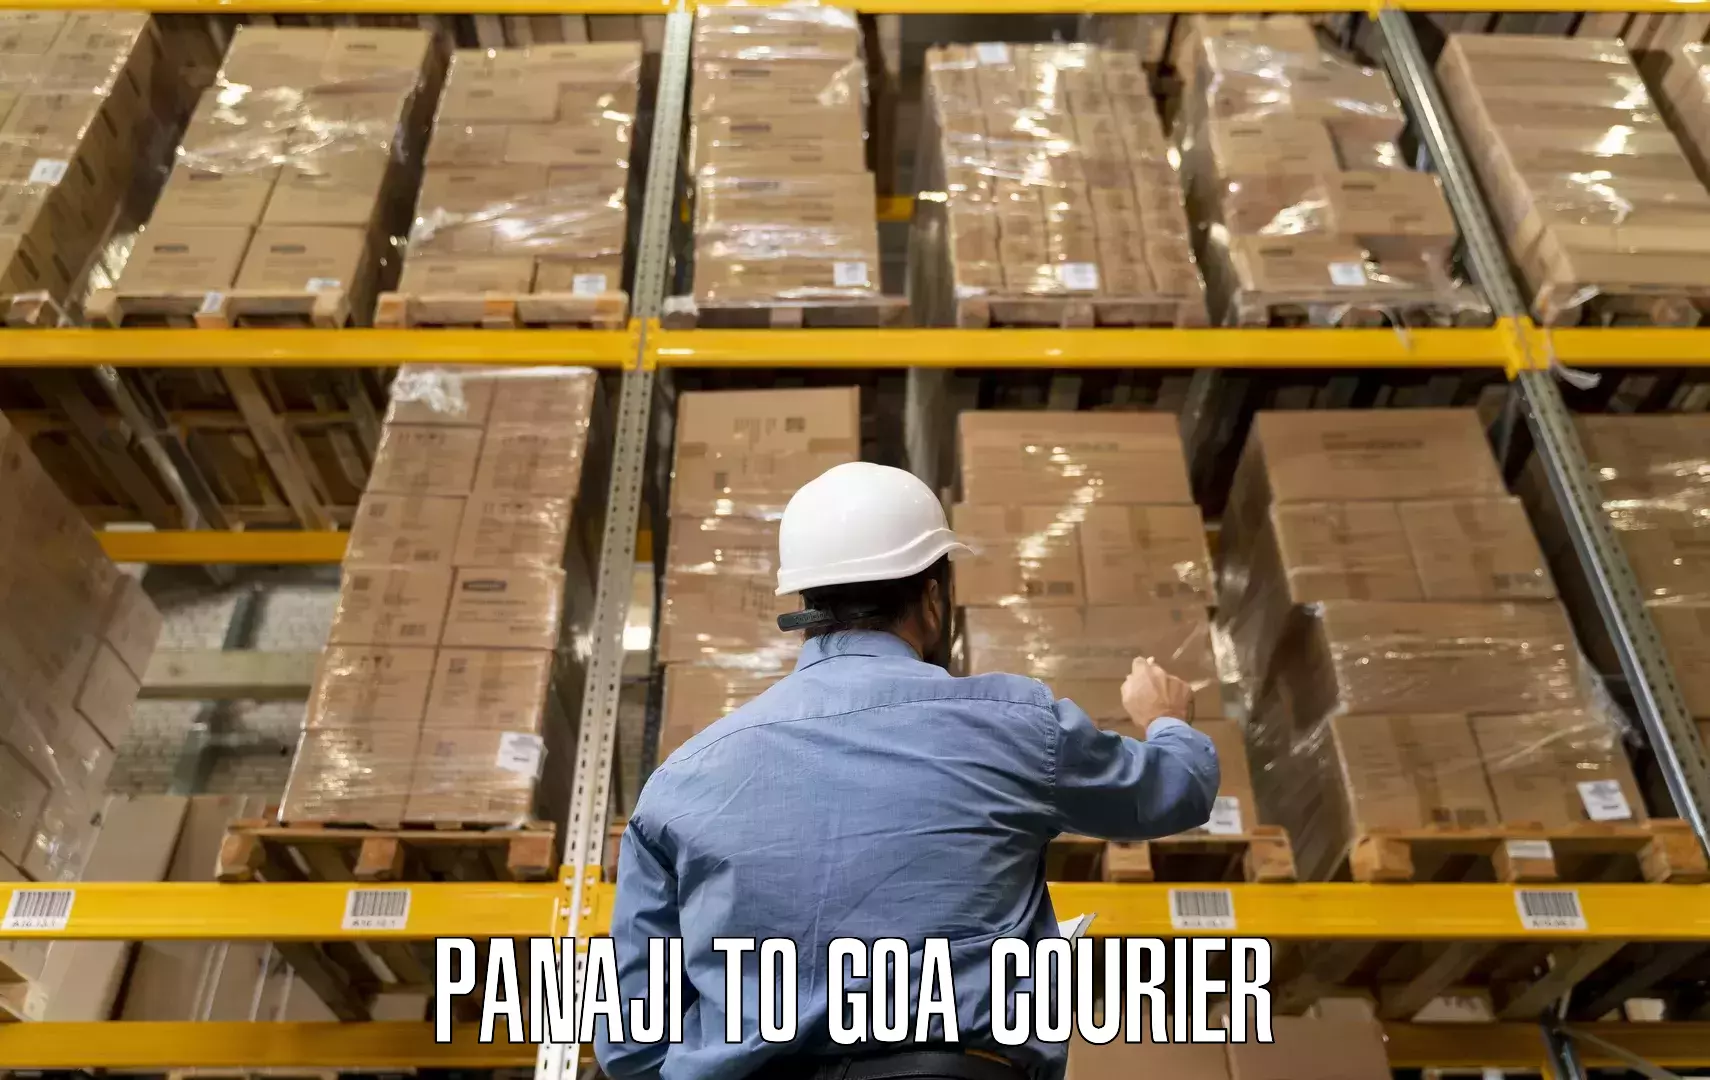 Furniture transport company Panaji to Ponda